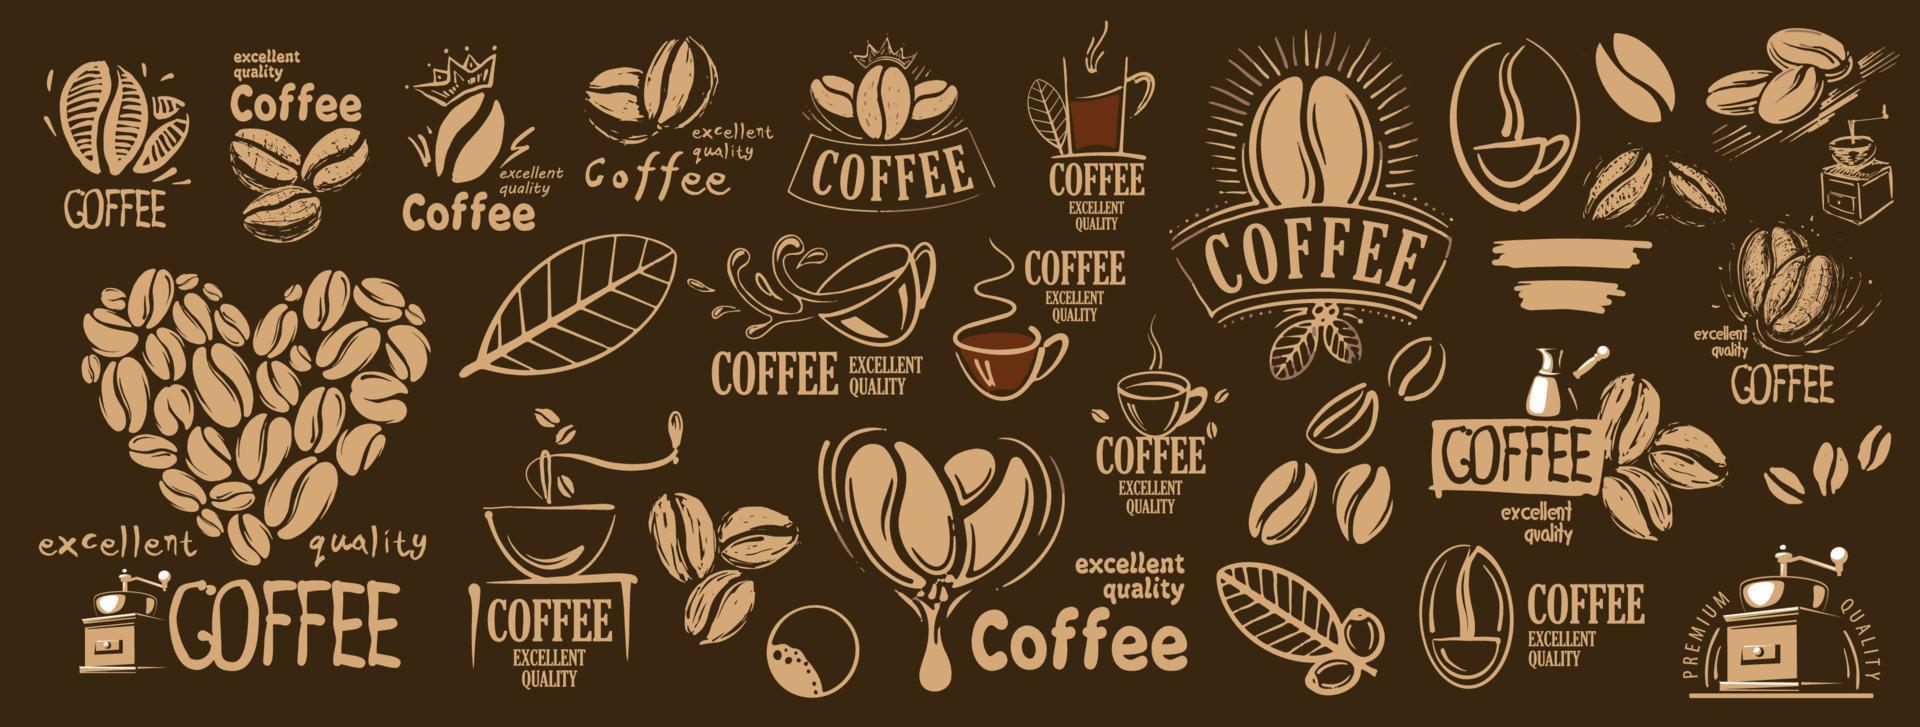 grote vectorset van getekende logo's en koffie-elementen vector